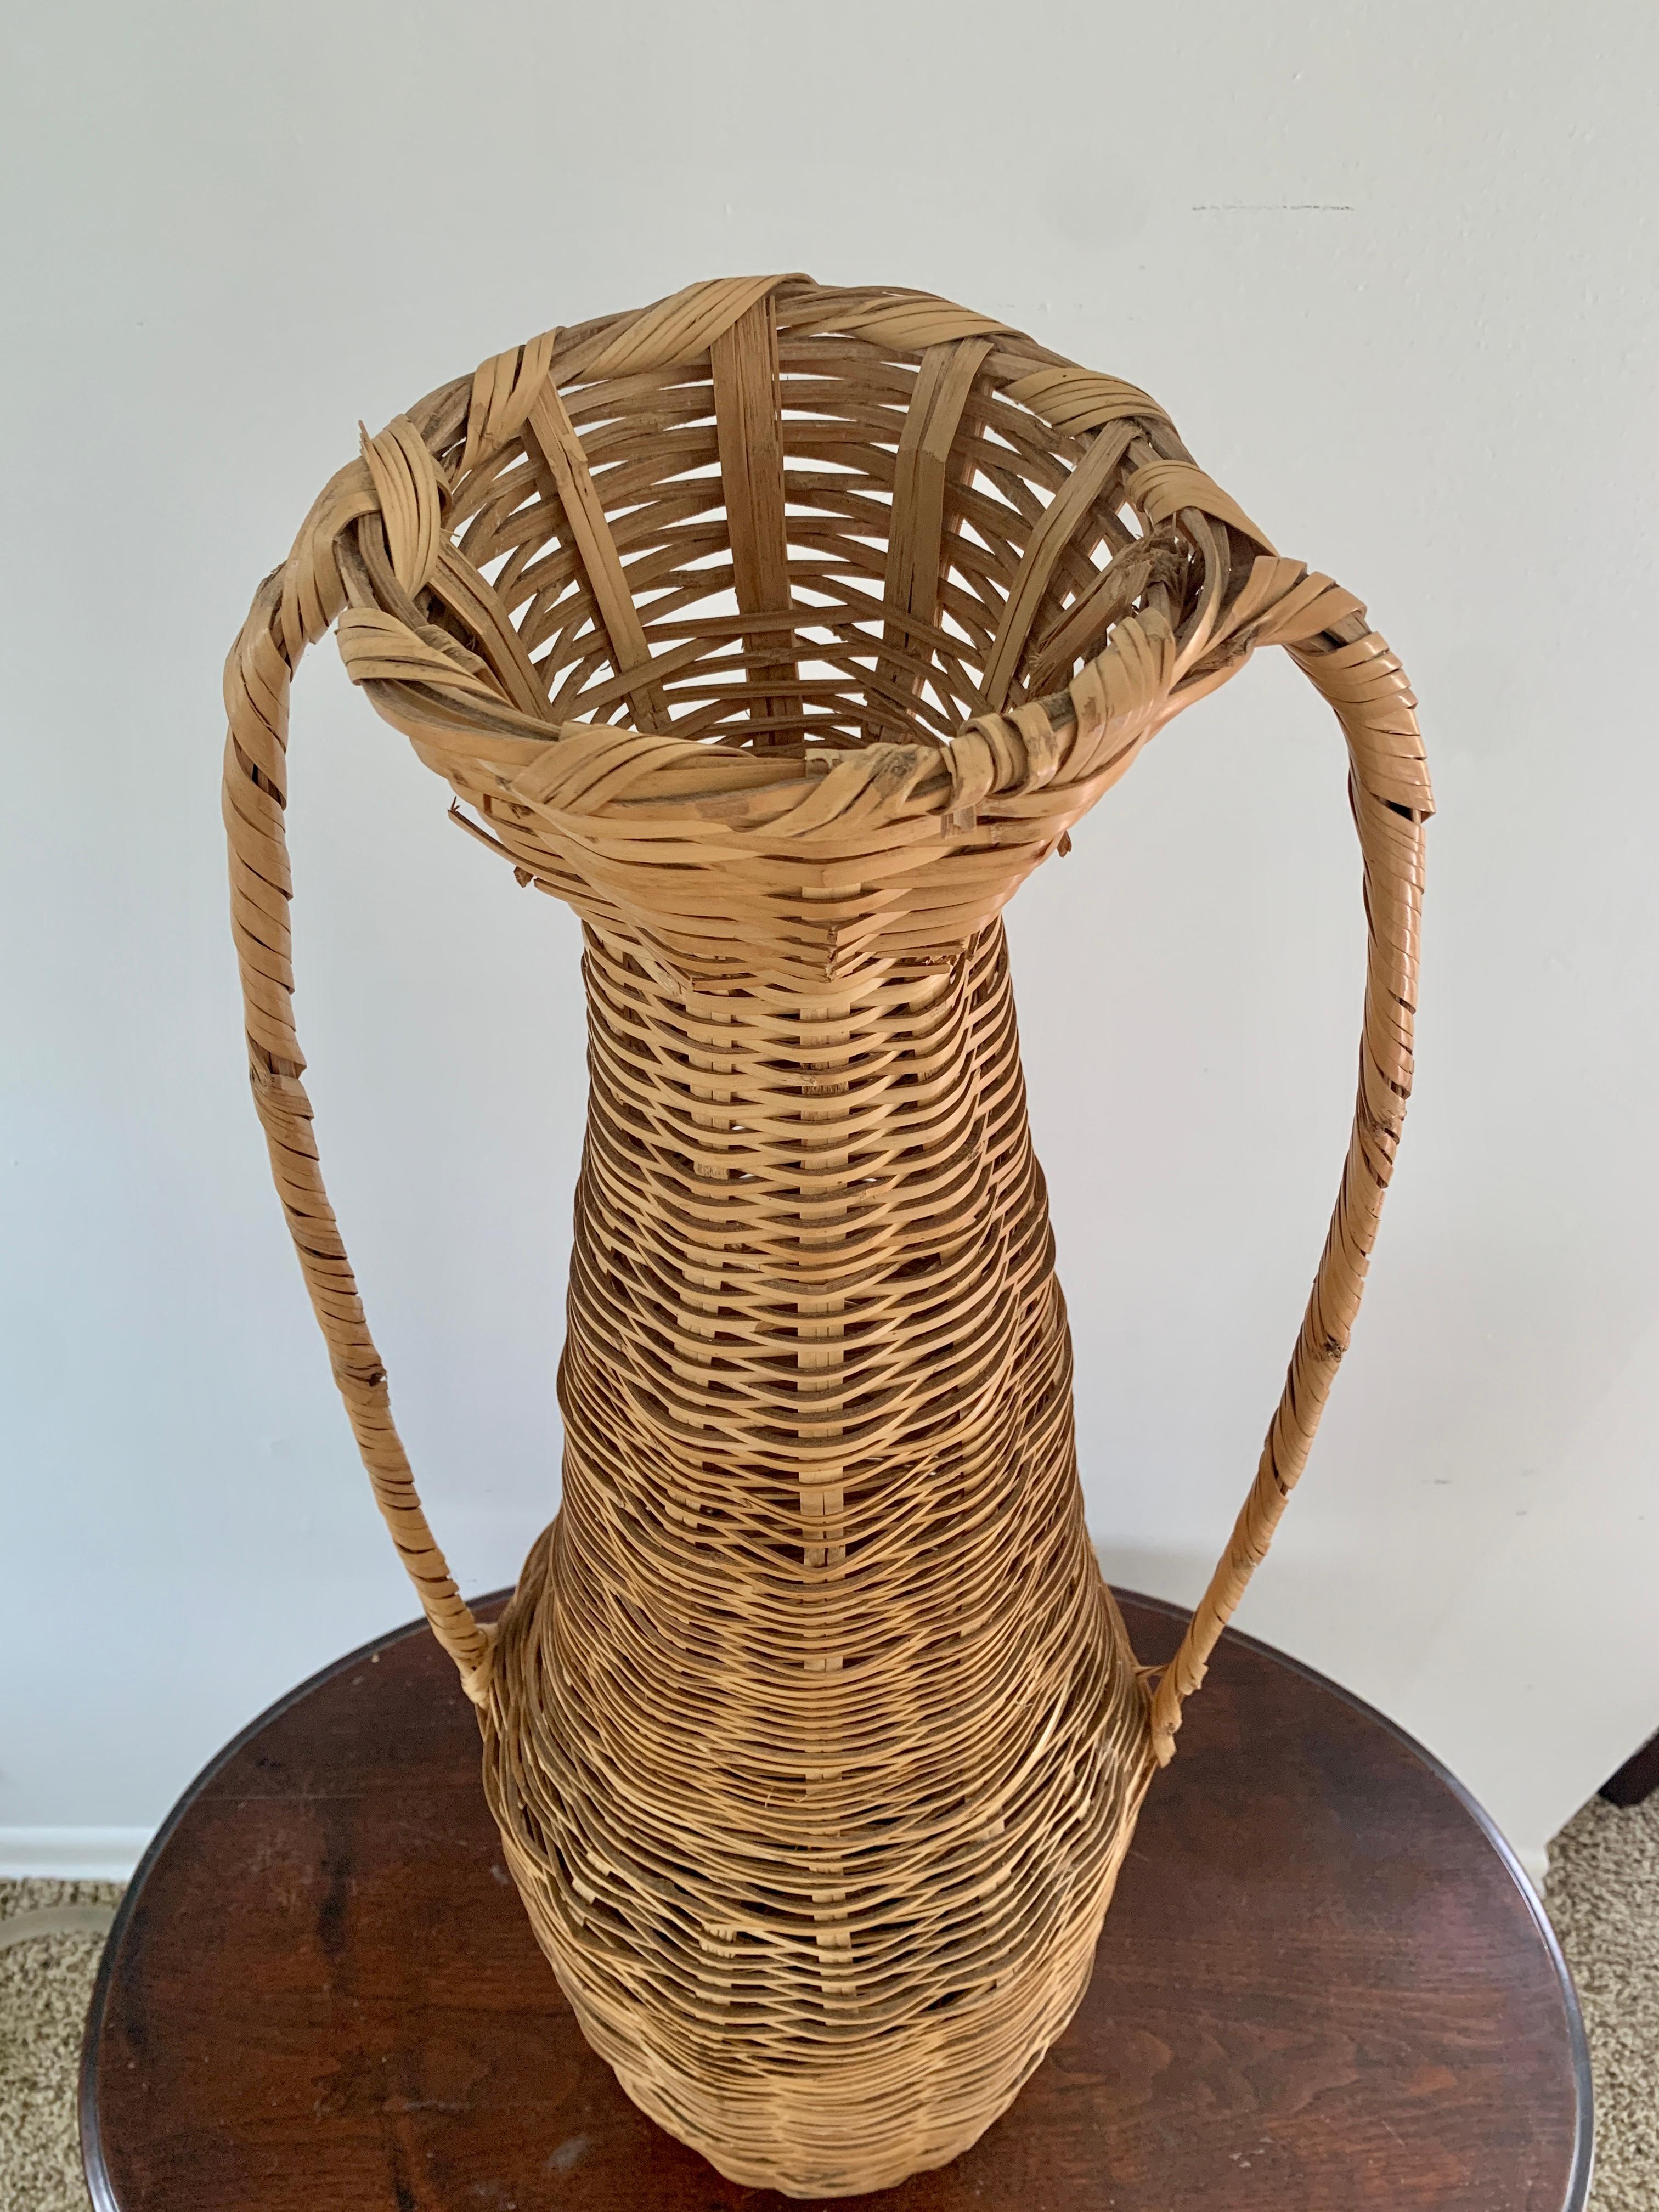 Un charmant vase panier de sol en osier tressé Boho Chic avec deux anses.

USA, Circa 1980

Dimensions : 12 